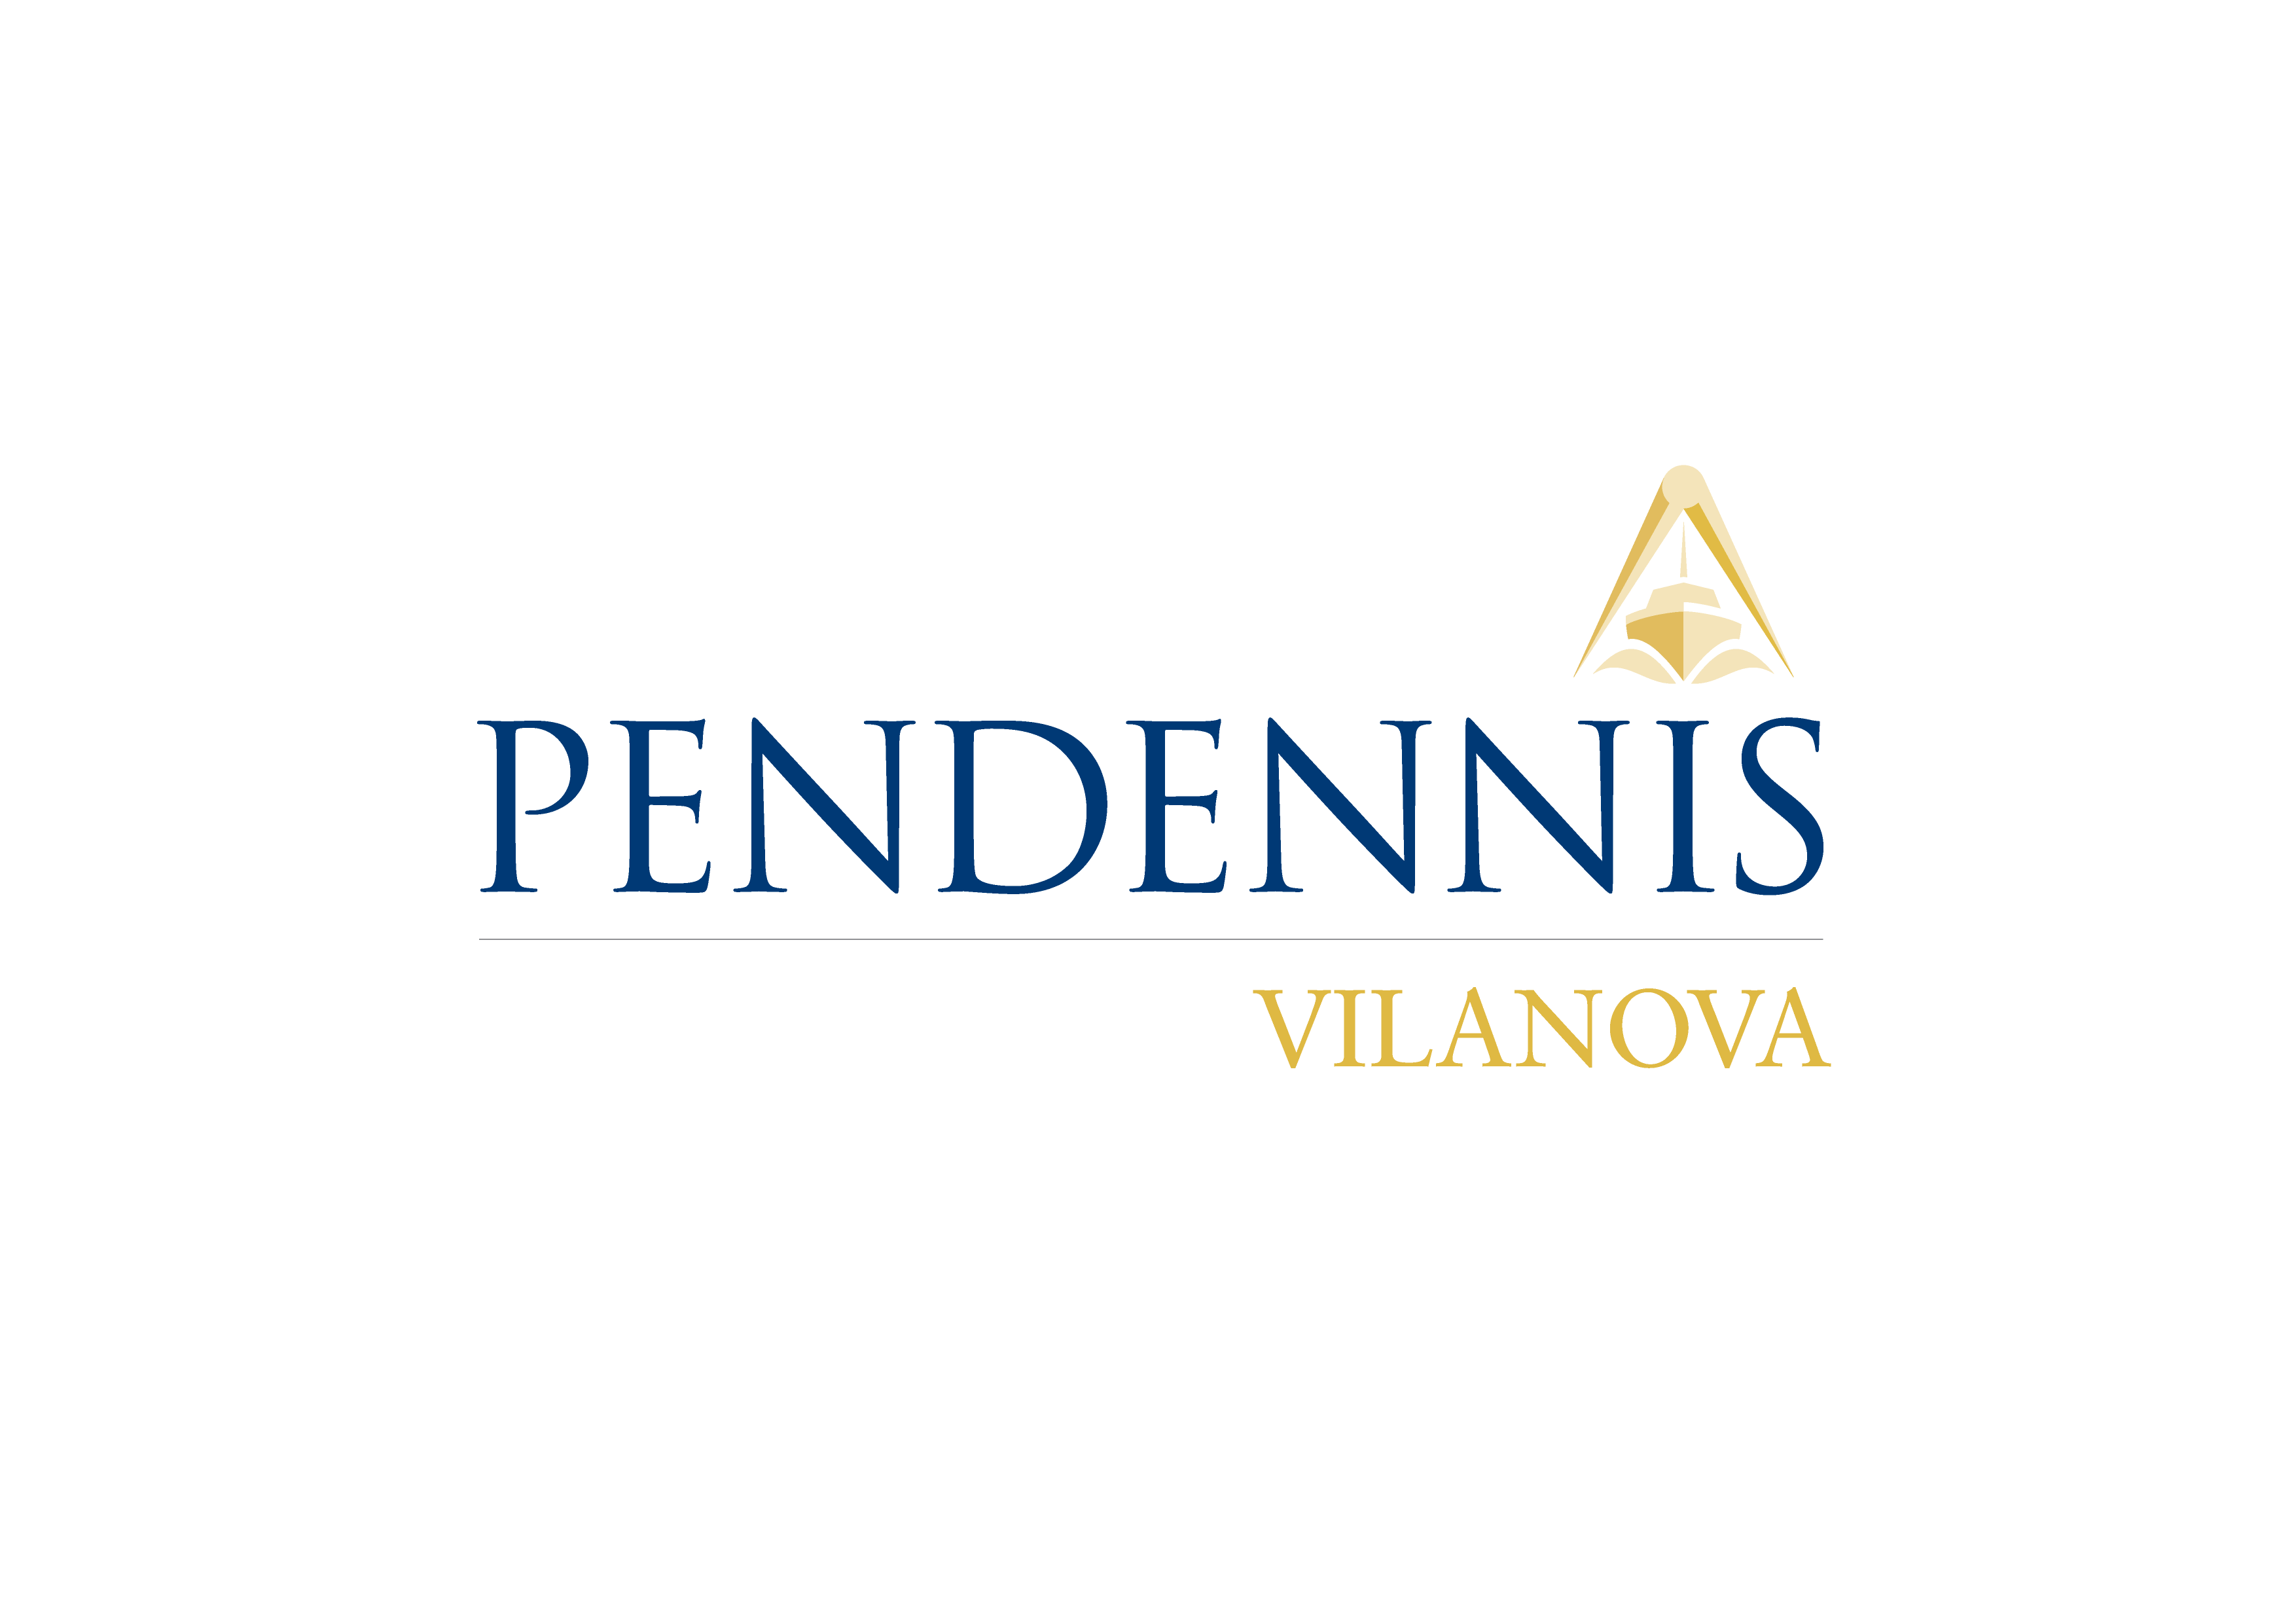 Pendennis Vilanova